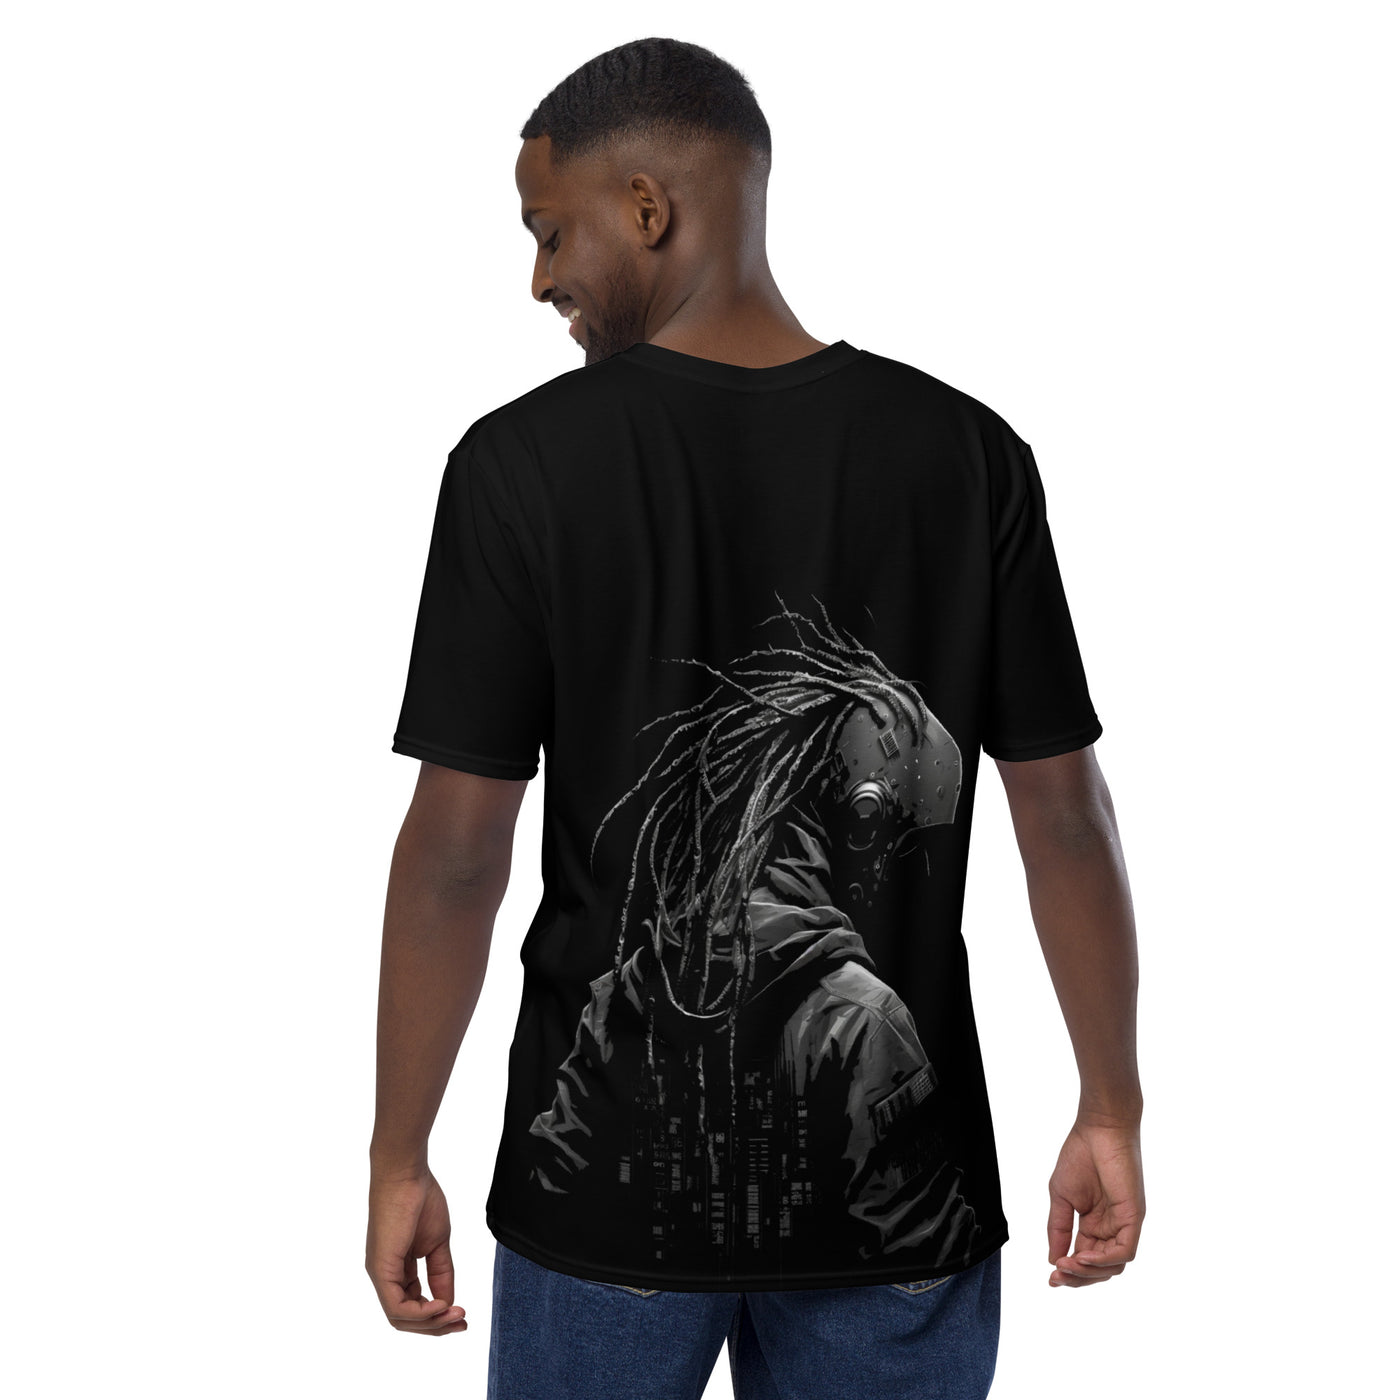 Cyberware assassin v39 - Men's t-shirt (back print)